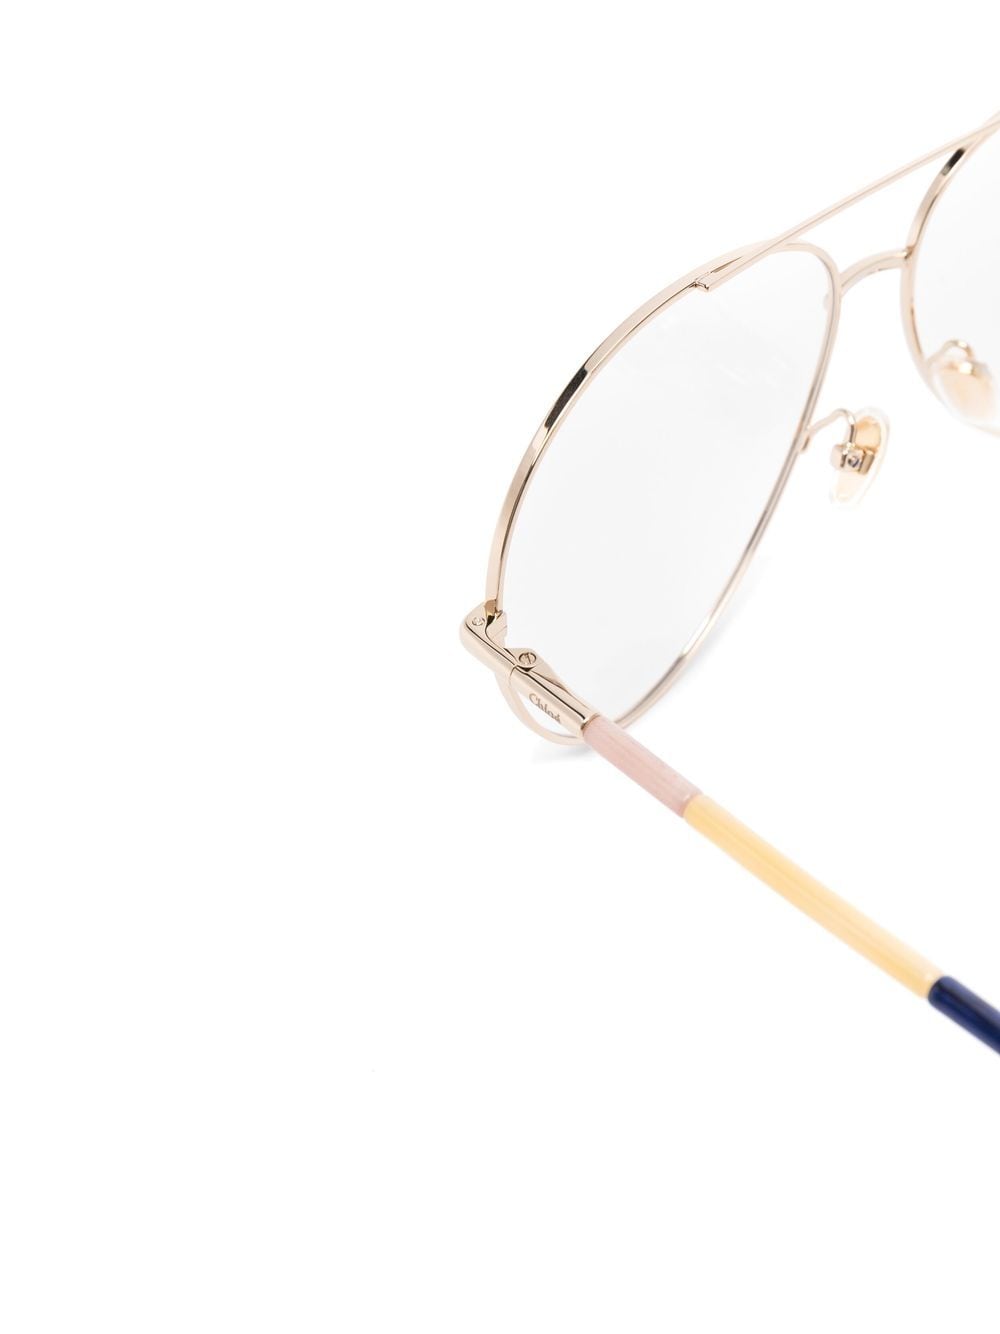 Optical: Pilot Eyeglasses, metal & calfskin — Fashion